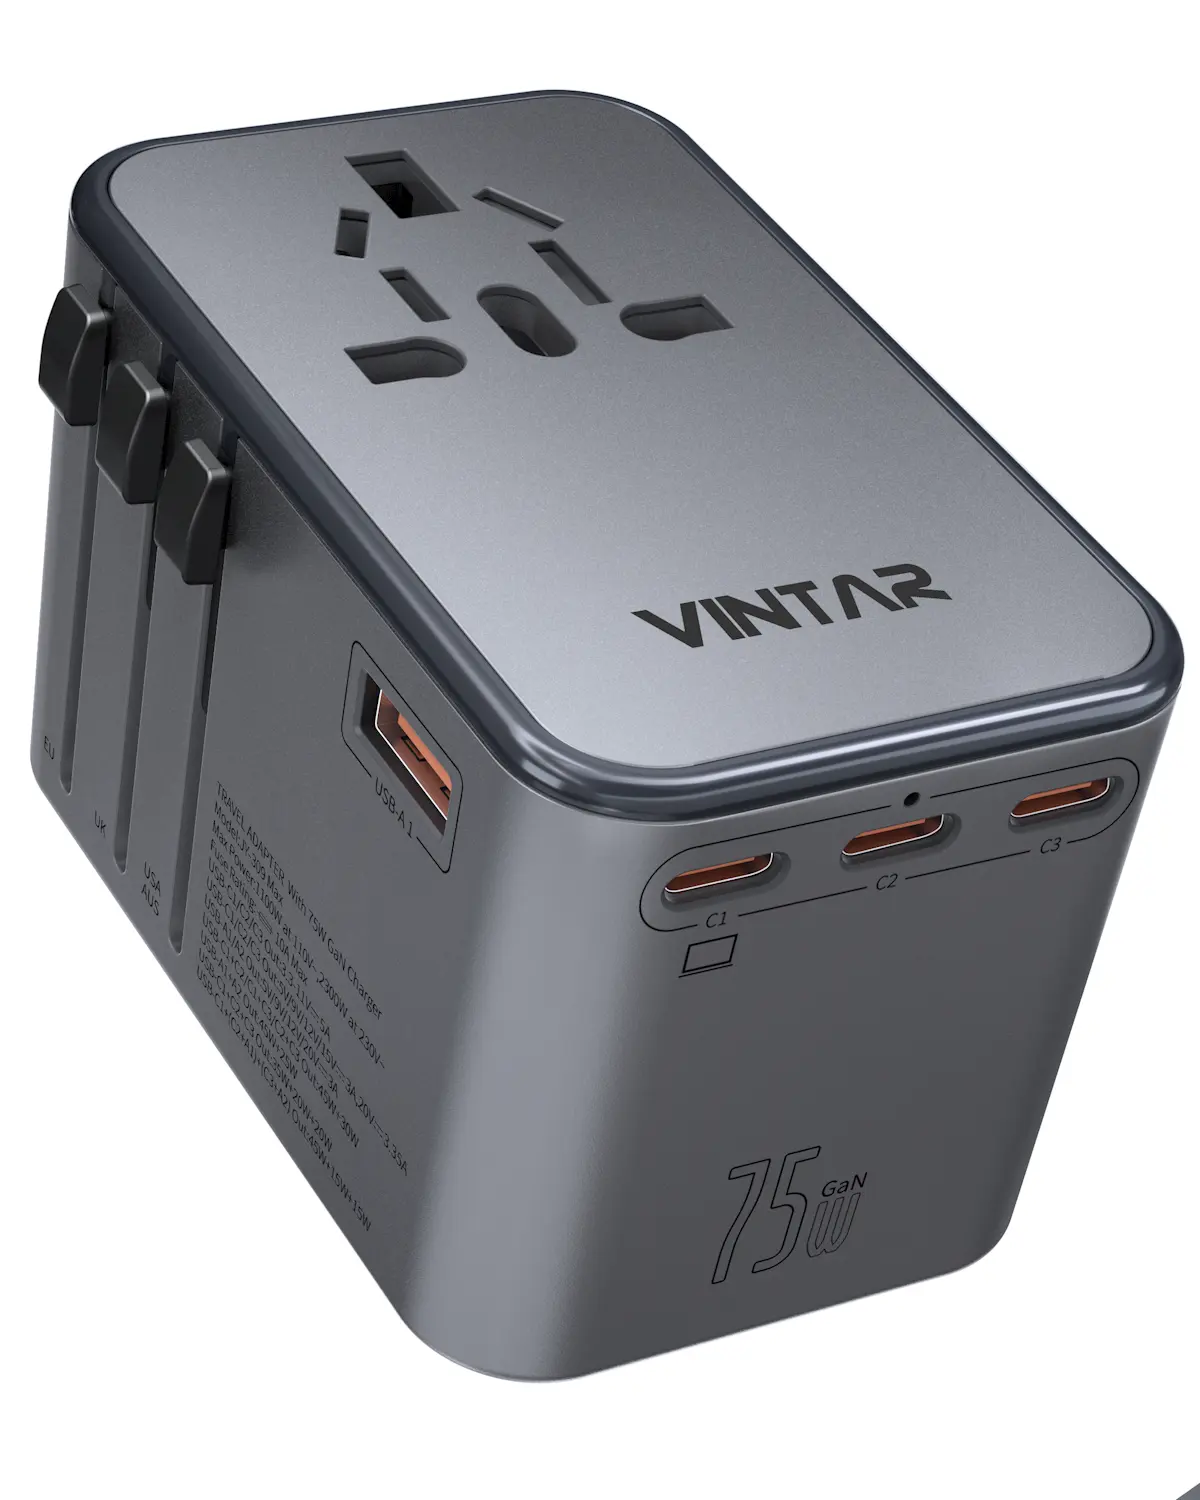 VINTAR GAN 75W USB All-in-One-Lade adapter für Reisen Universal Travel Power Charger-Buchsen mit EU US UK AU-Stecker